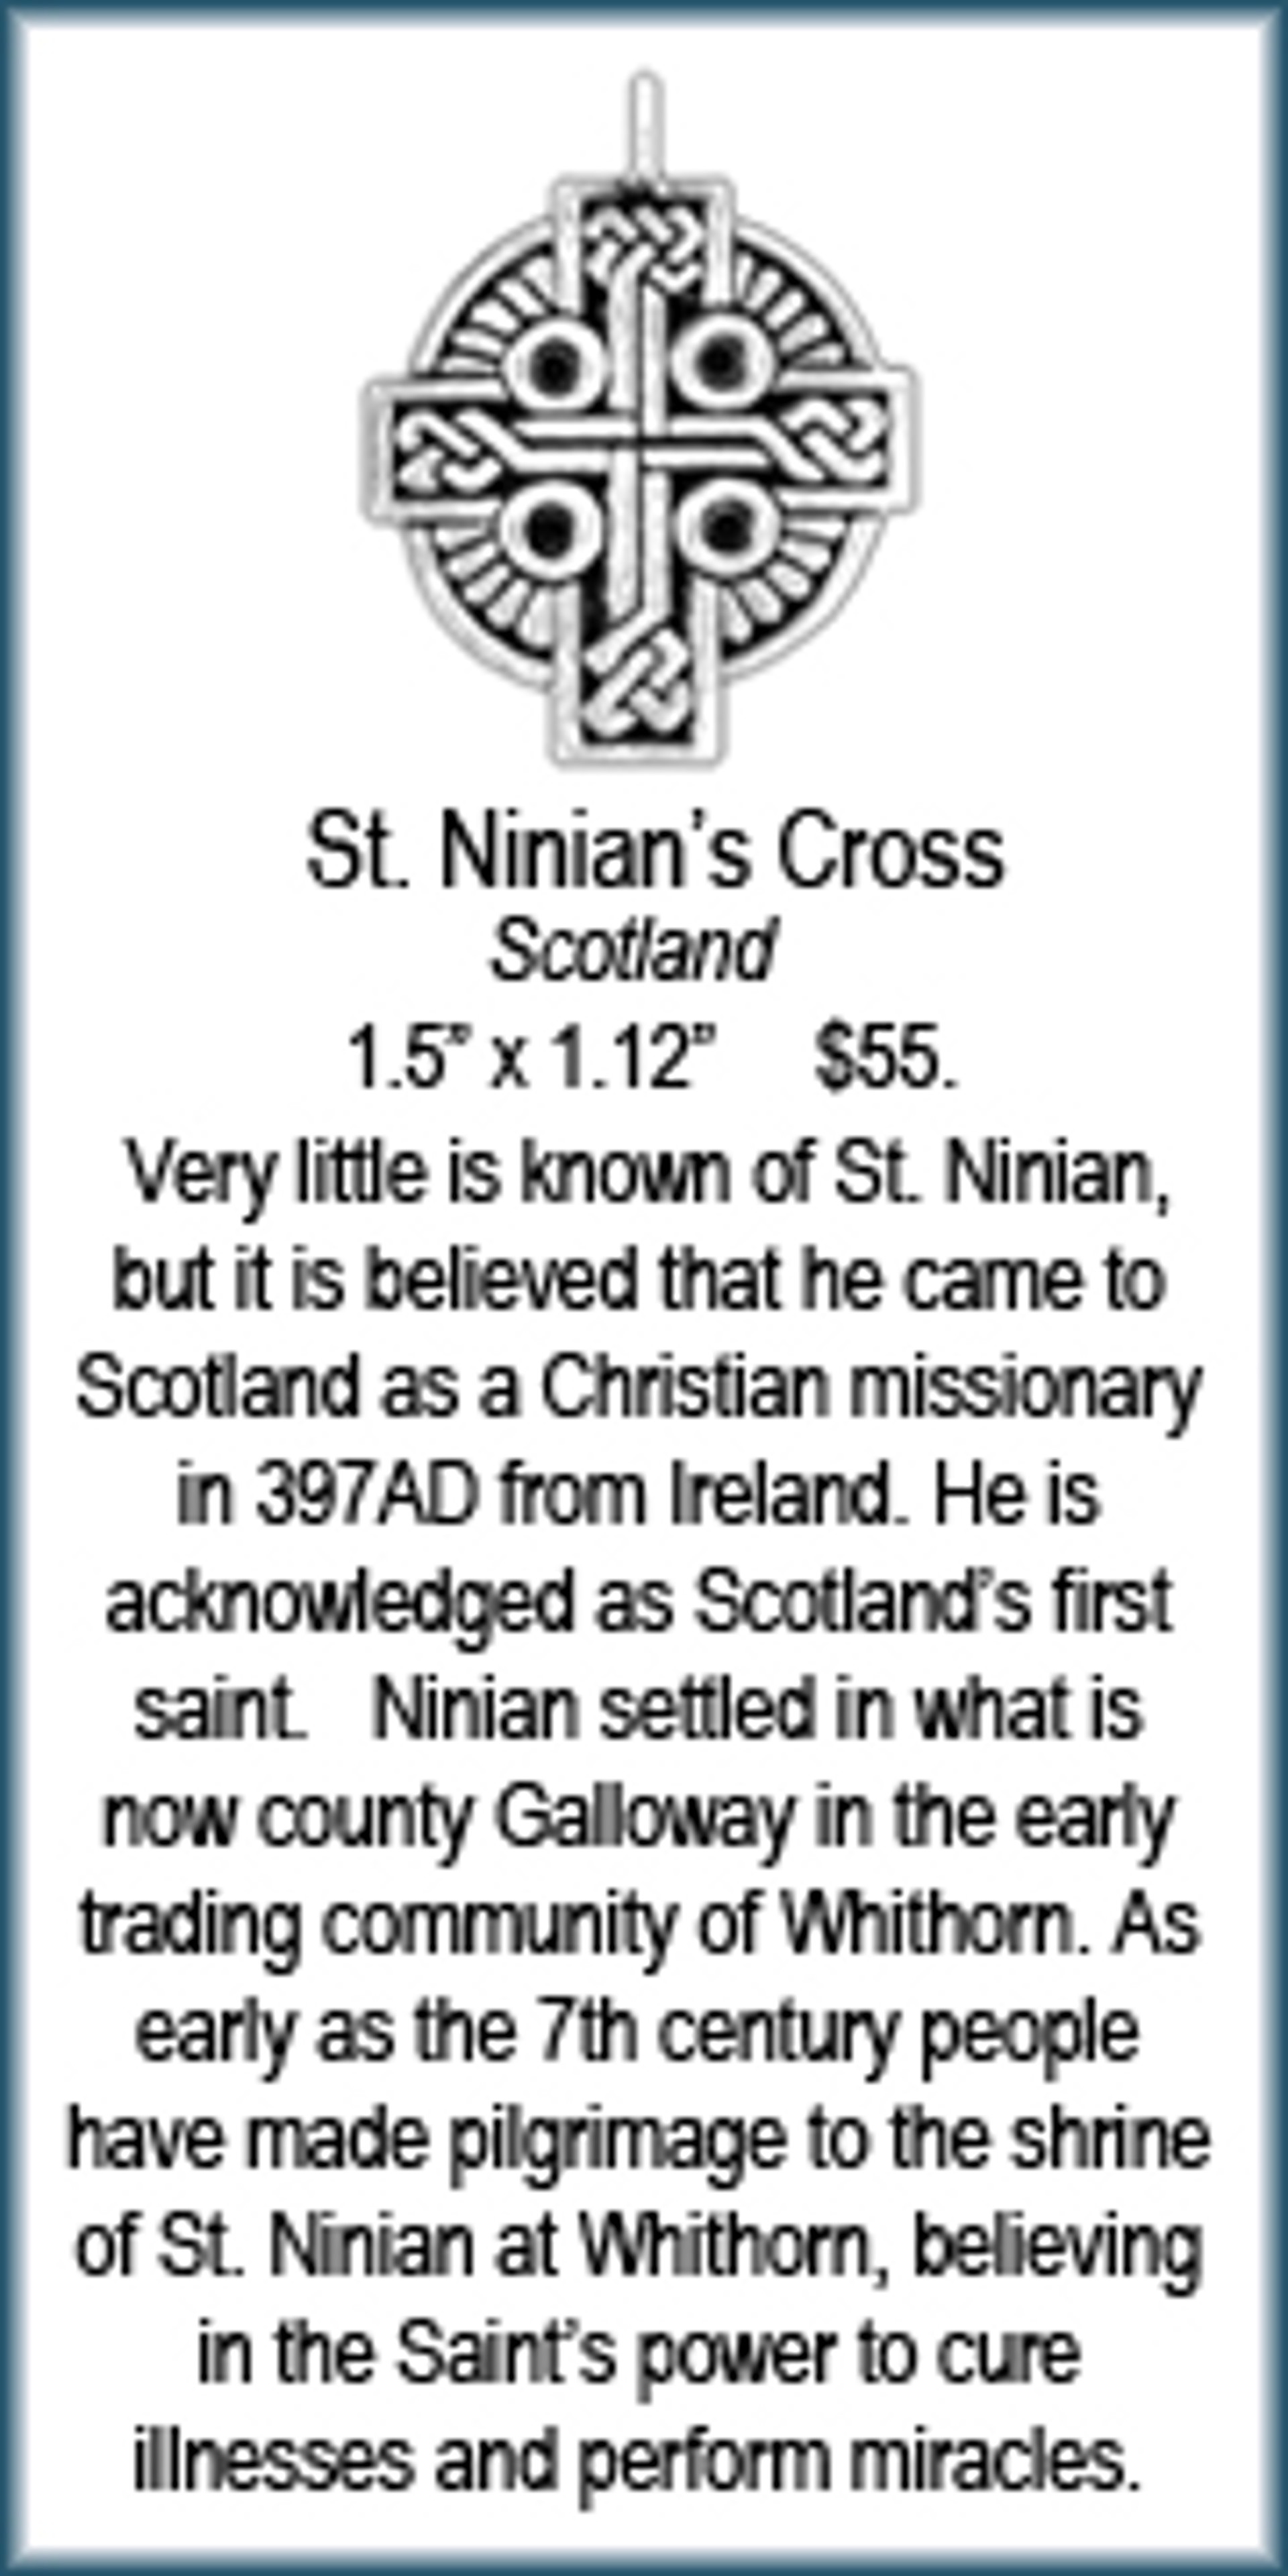 Cross - St. Ninian's by Deanne McKeown